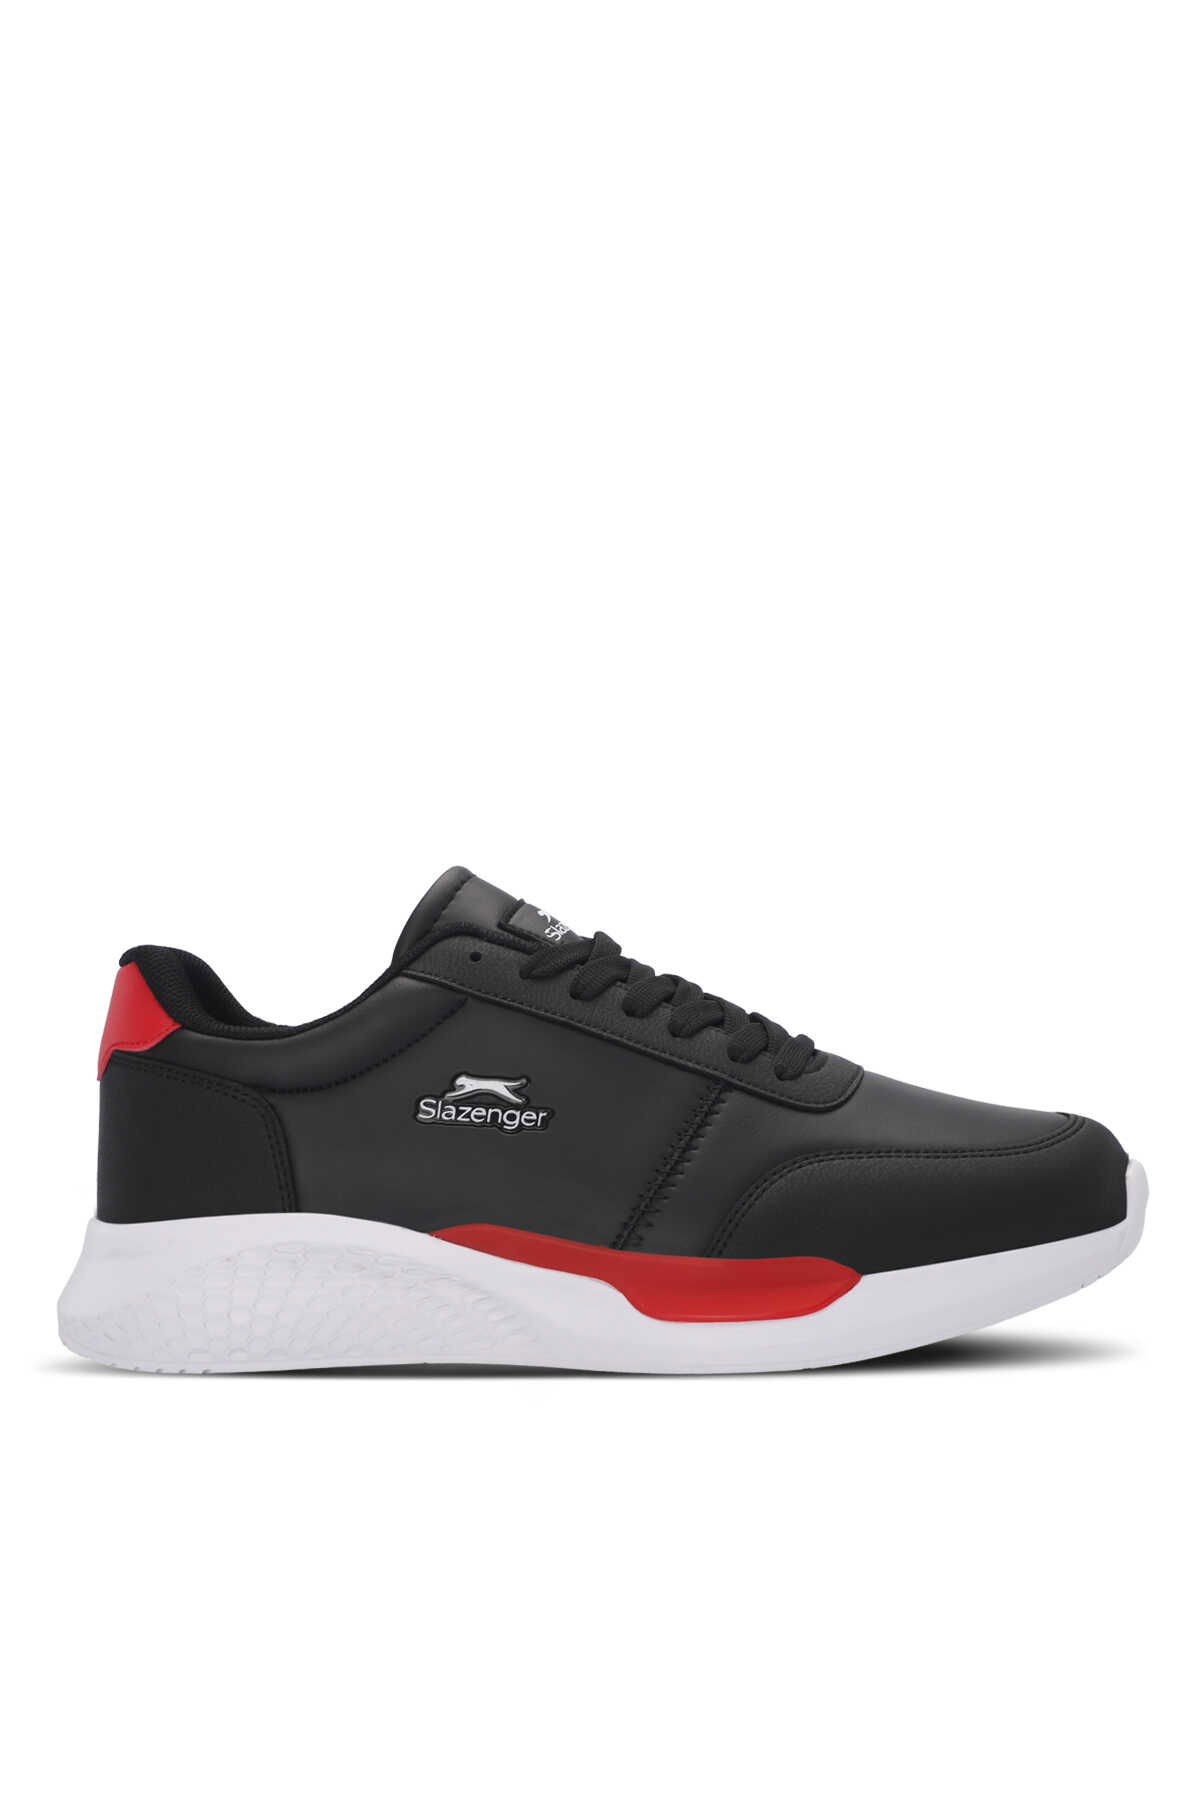 Slazenger - Slazenger MARTINE I Erkek Sneaker Ayakkabı Siyah / Kırmızı